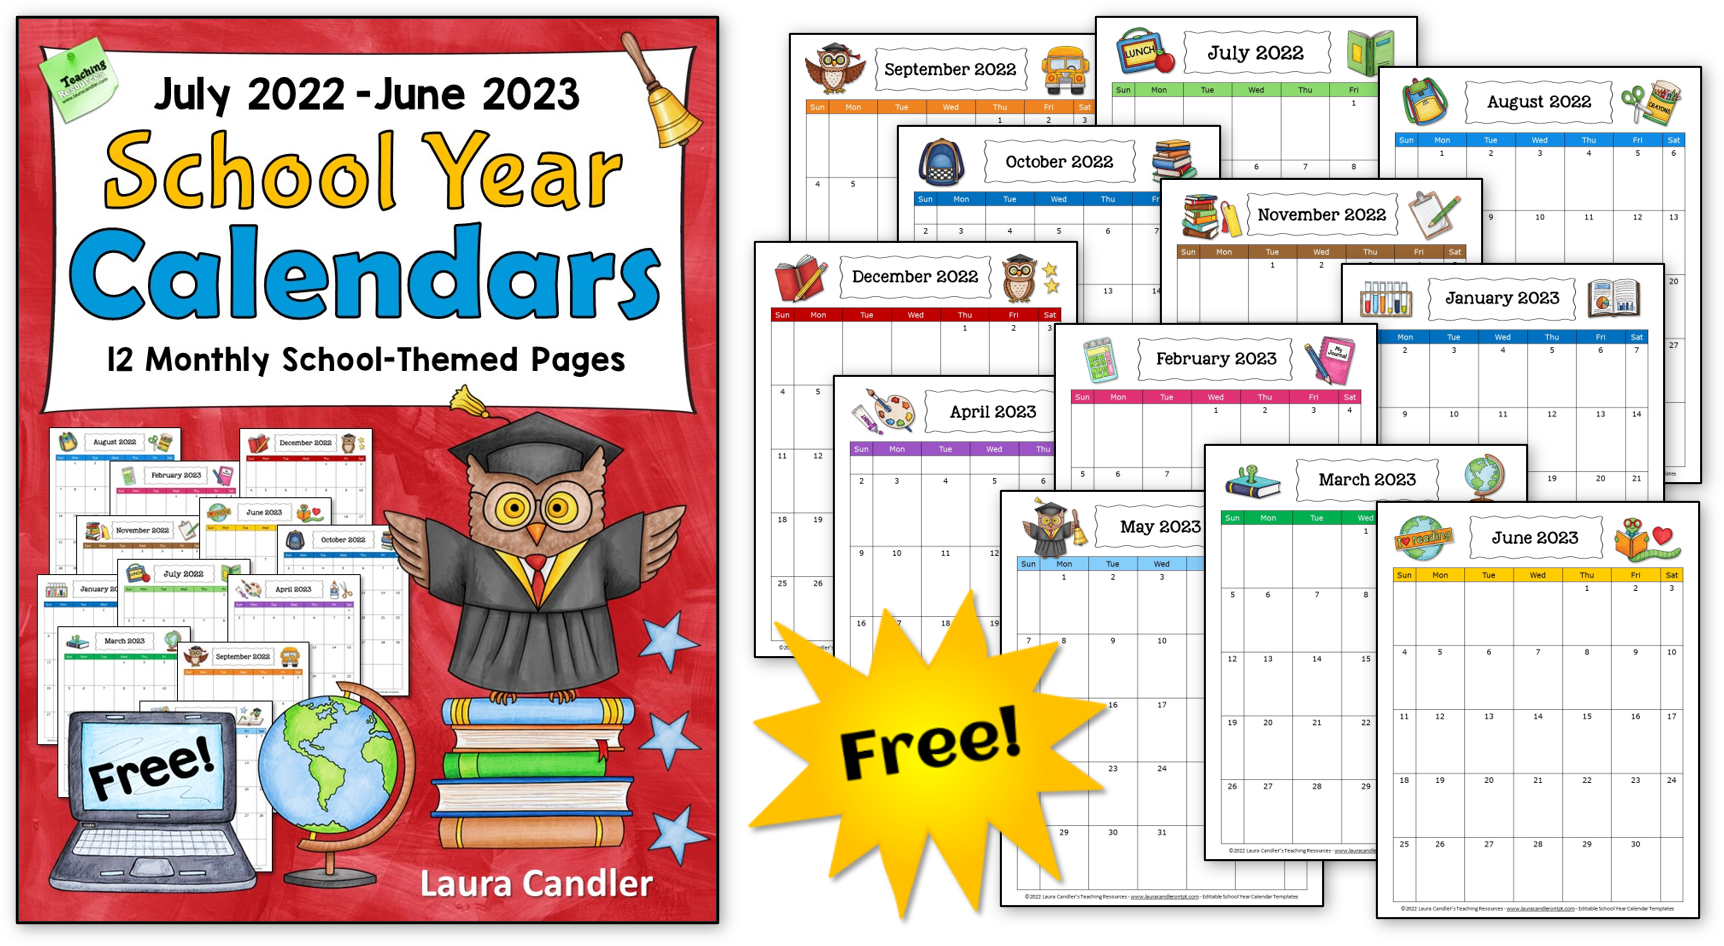 Free School Year Calendar Laura Candler